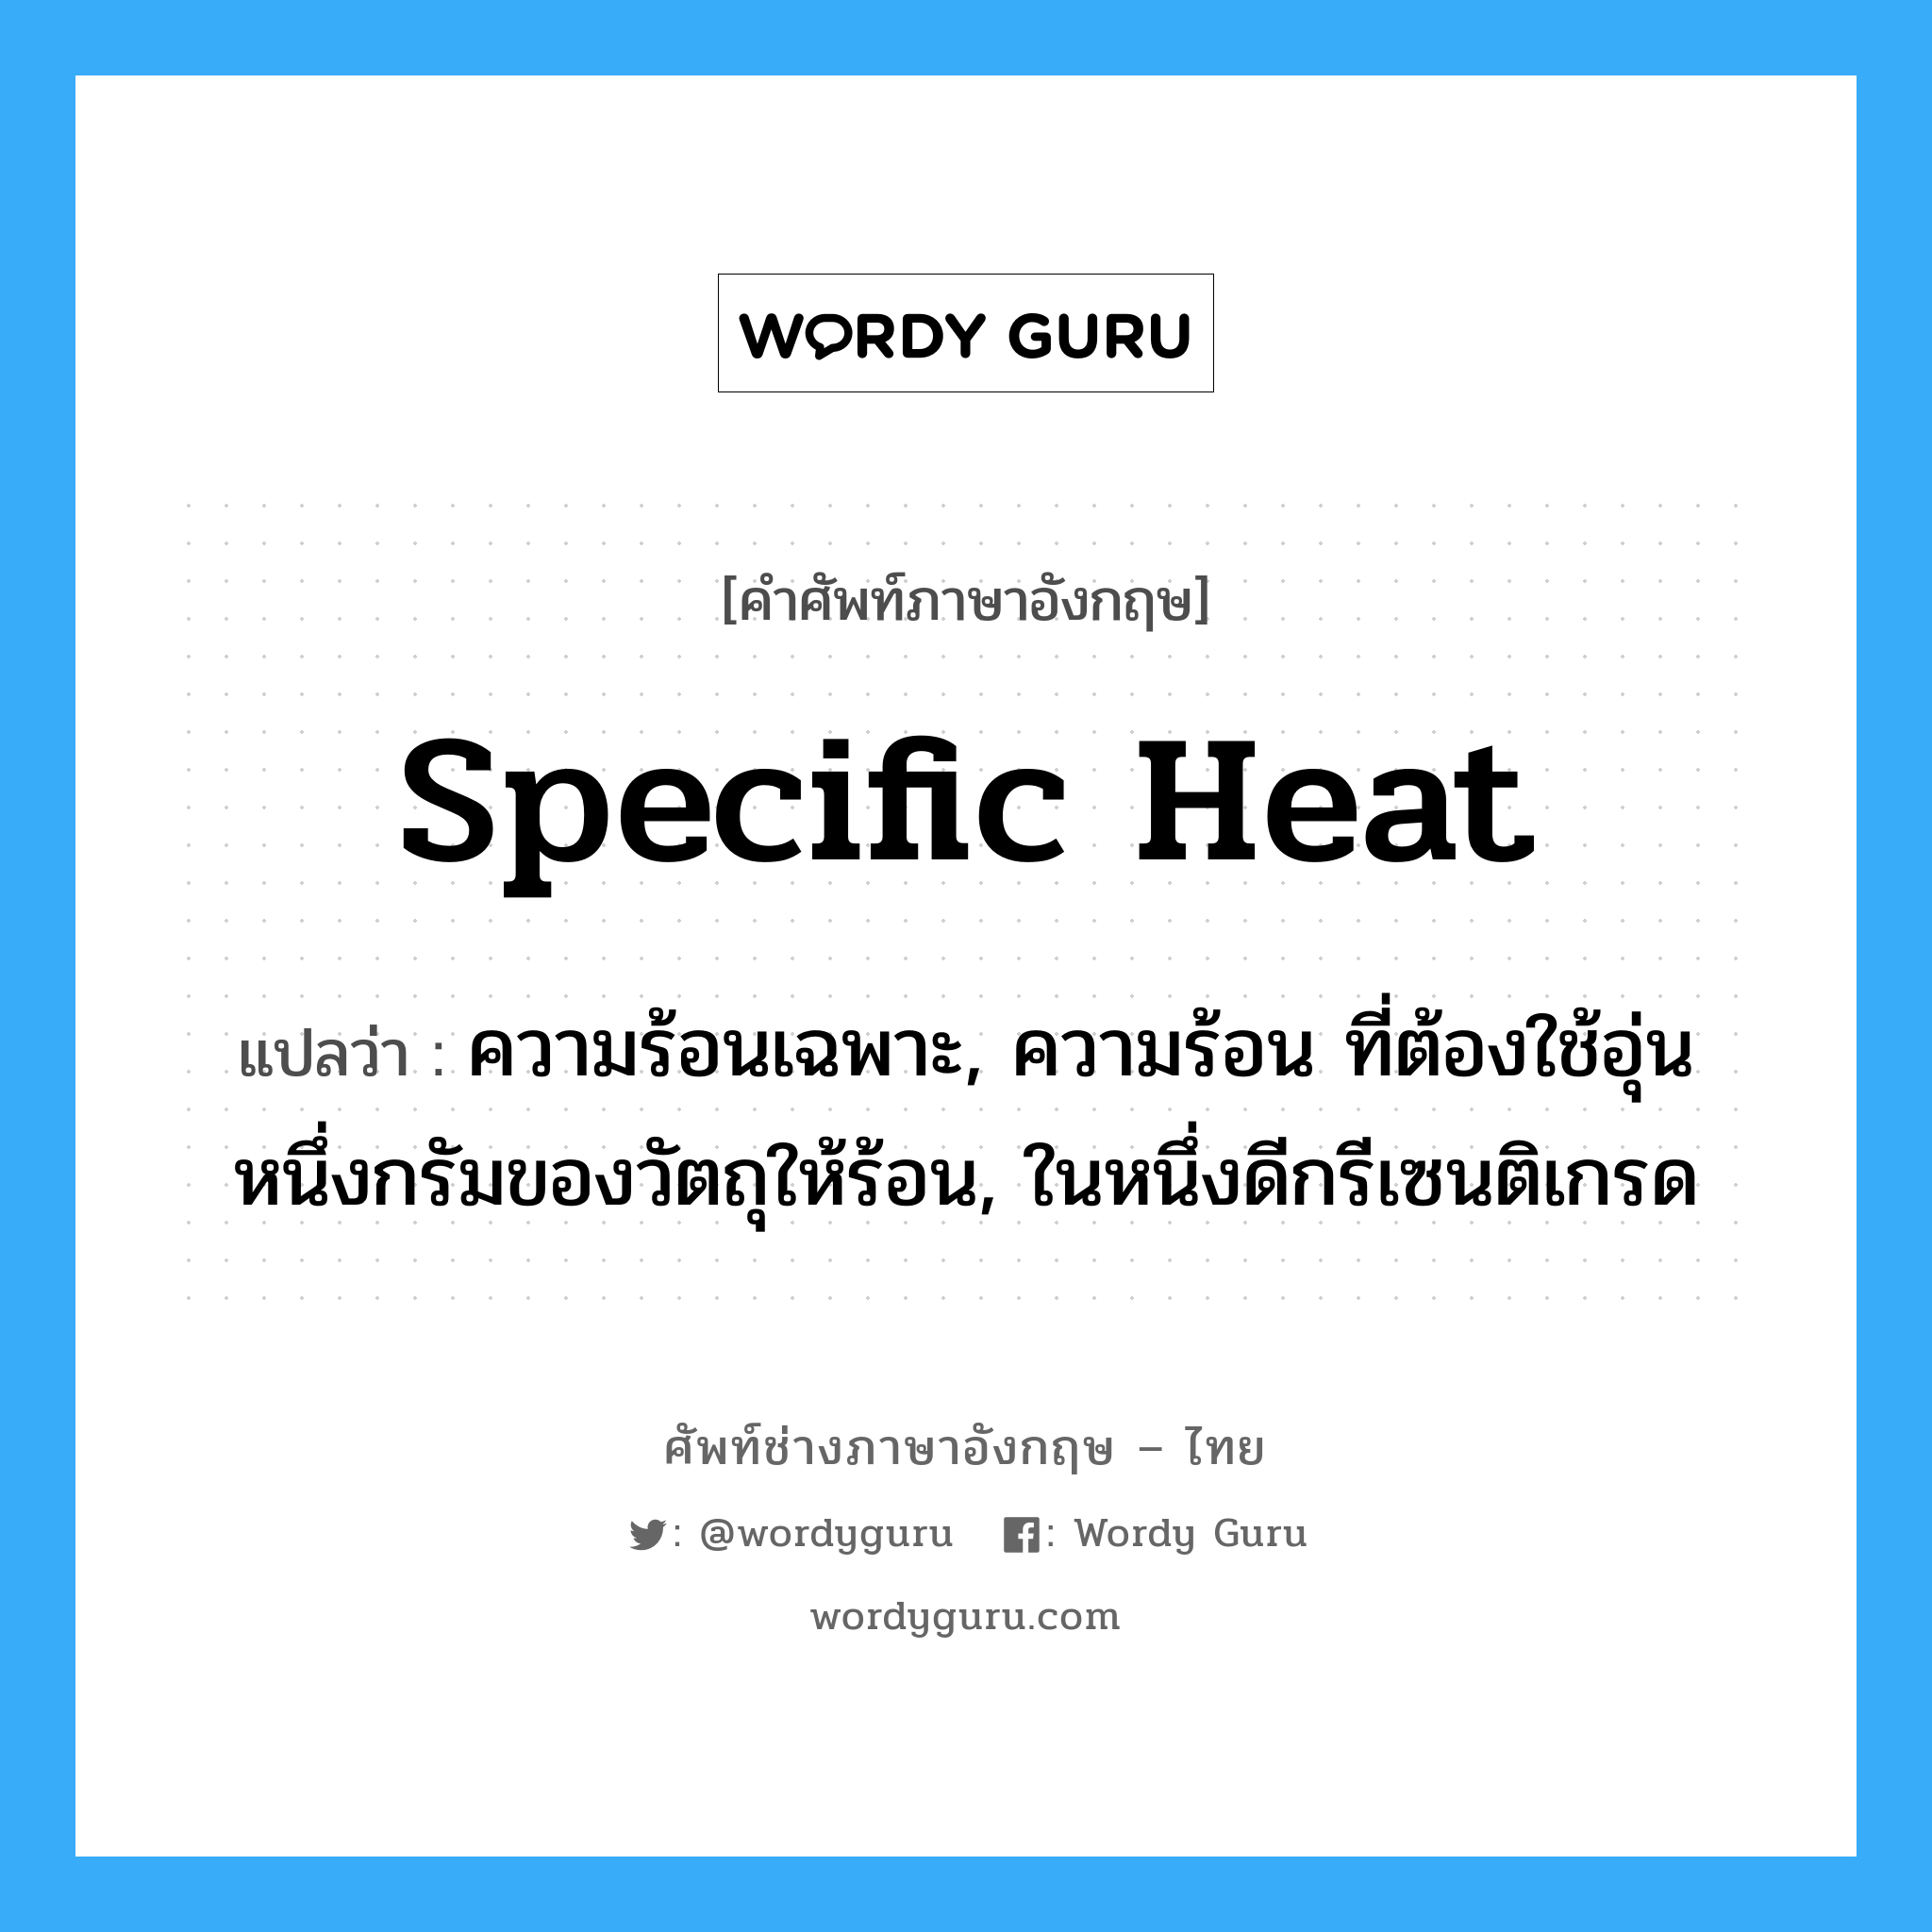 specific heat แปลว่า?, คำศัพท์ช่างภาษาอังกฤษ - ไทย specific heat คำศัพท์ภาษาอังกฤษ specific heat แปลว่า ความร้อนเฉพาะ, ความร้อน ที่ต้องใช้อุ่นหนึ่งกรัมของวัตถุให้ร้อน, ในหนึ่งดีกรีเซนติเกรด